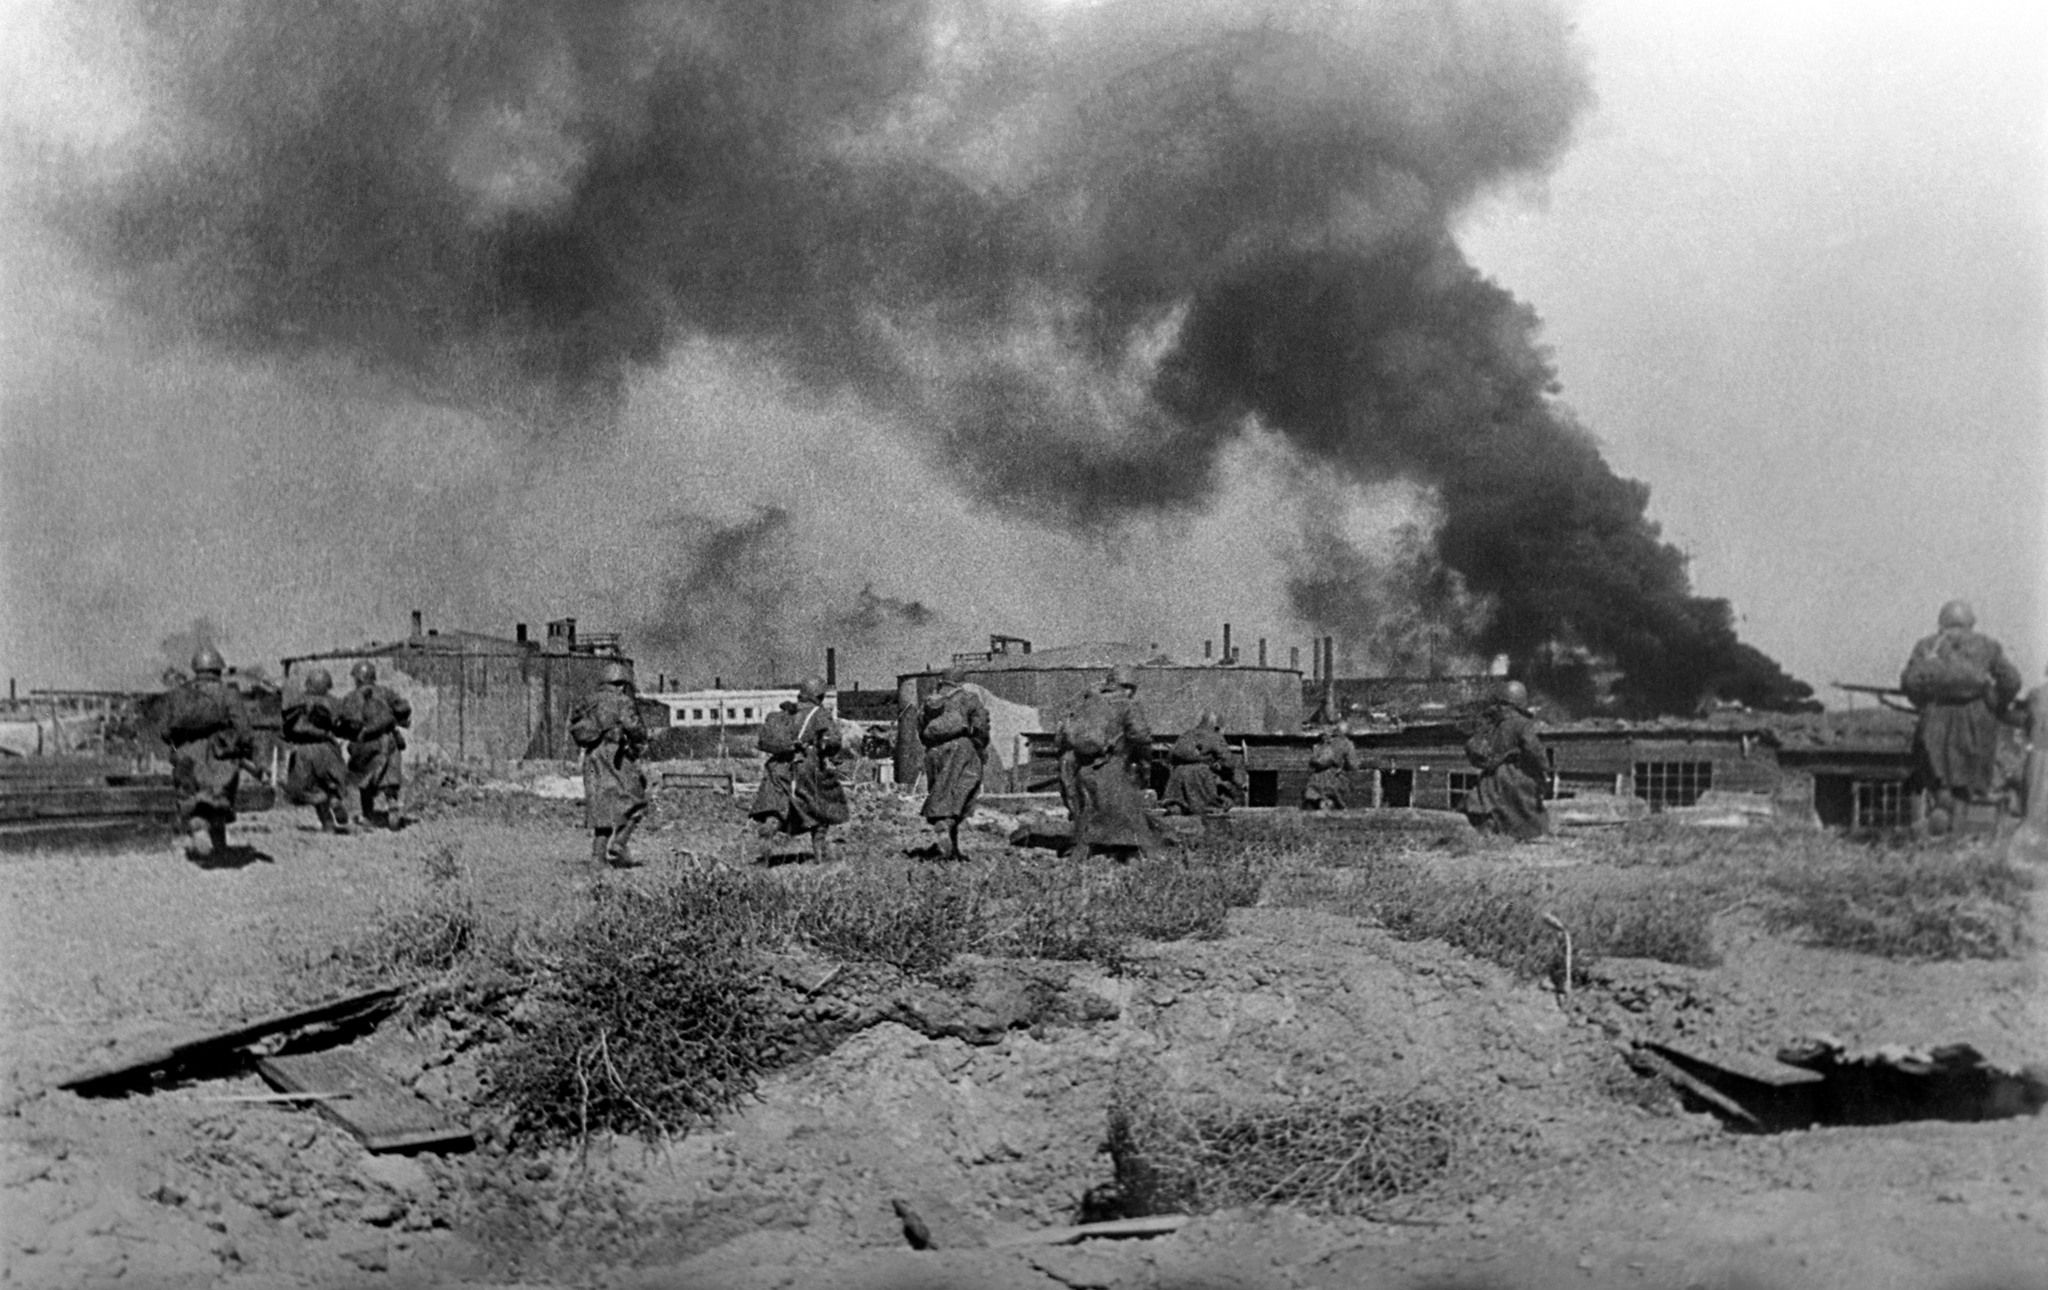 抗日战争研究陈默国民政府如何观察1941年的苏德战局